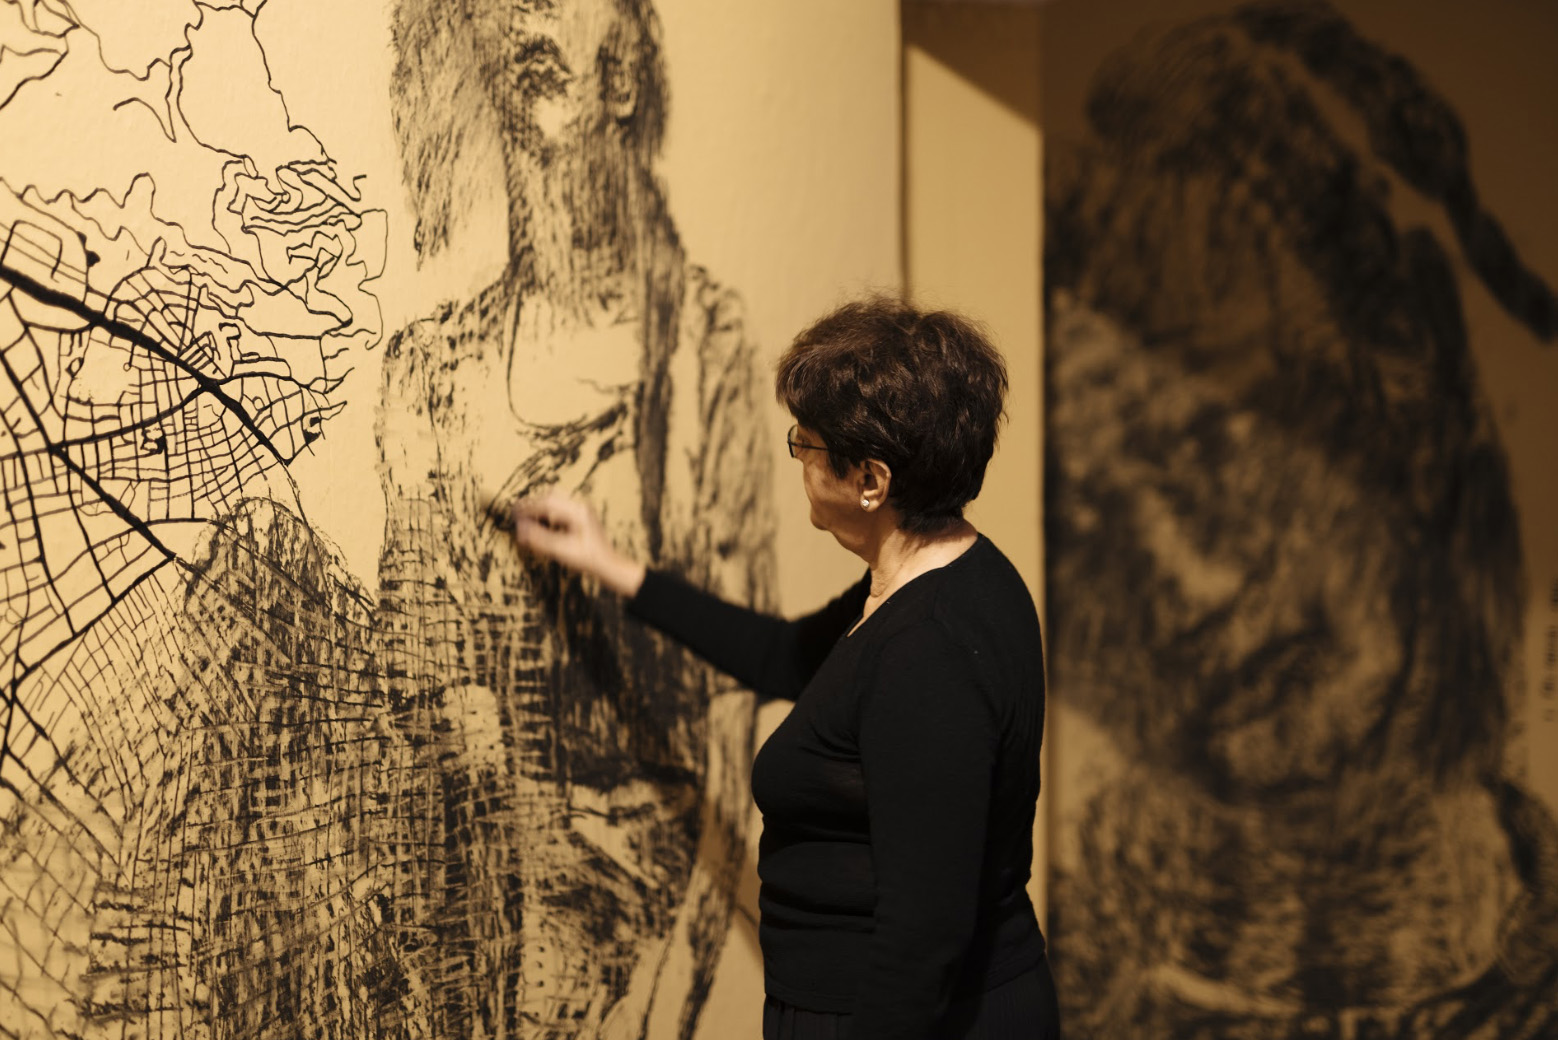 La Fundació Joan Miró inaugura “No em sents” de Nalini Malani, Premi Joan Miró 2020